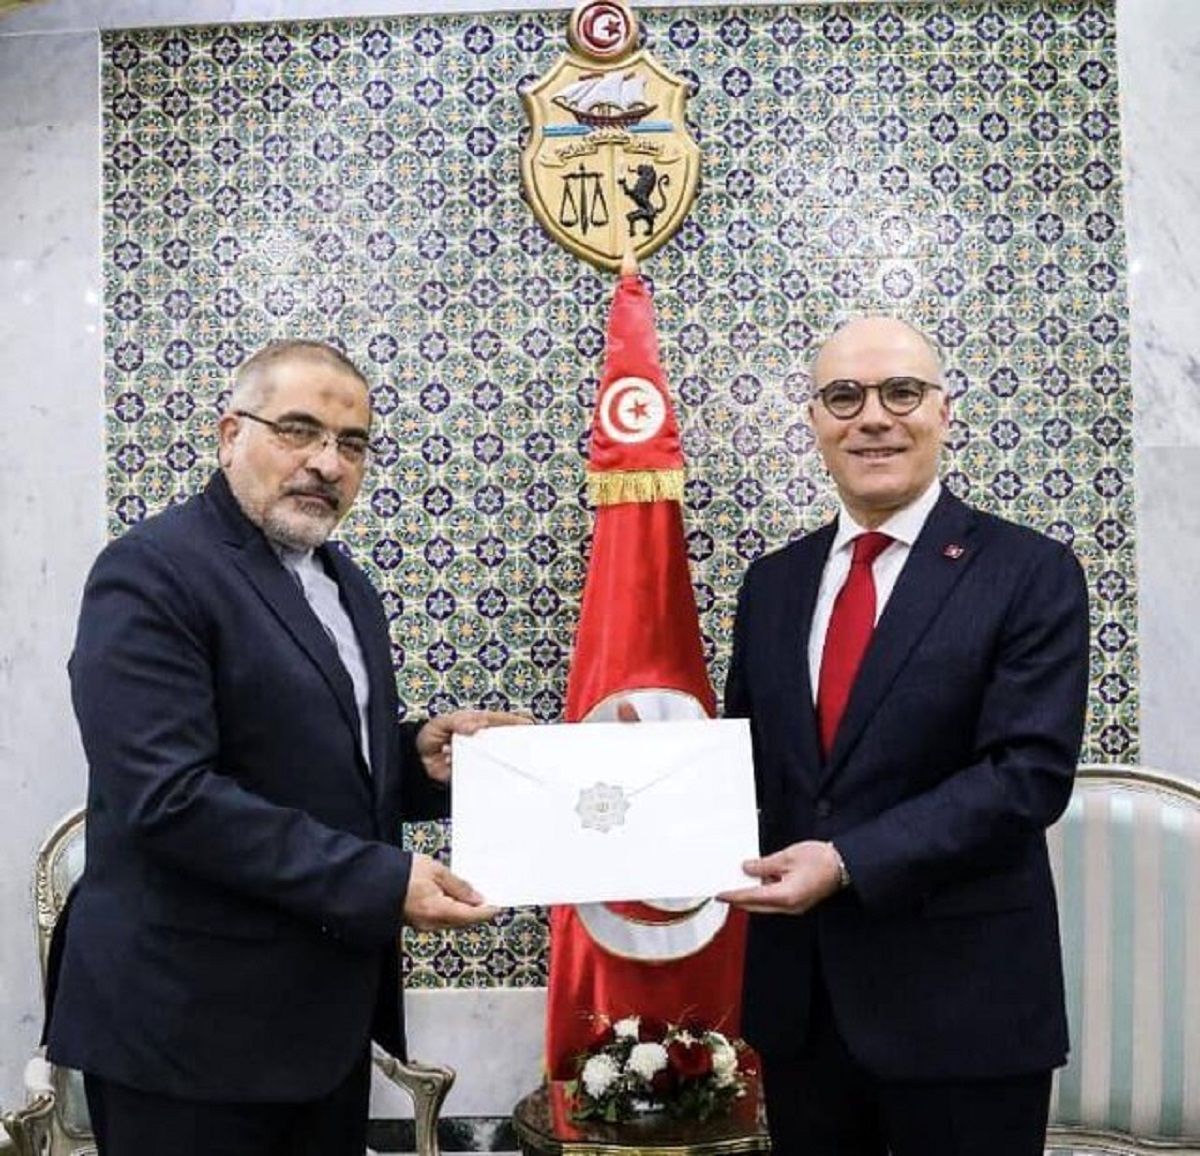 سفیر جدید ایران در تونس استوار نامه خود را تقدیم کرد